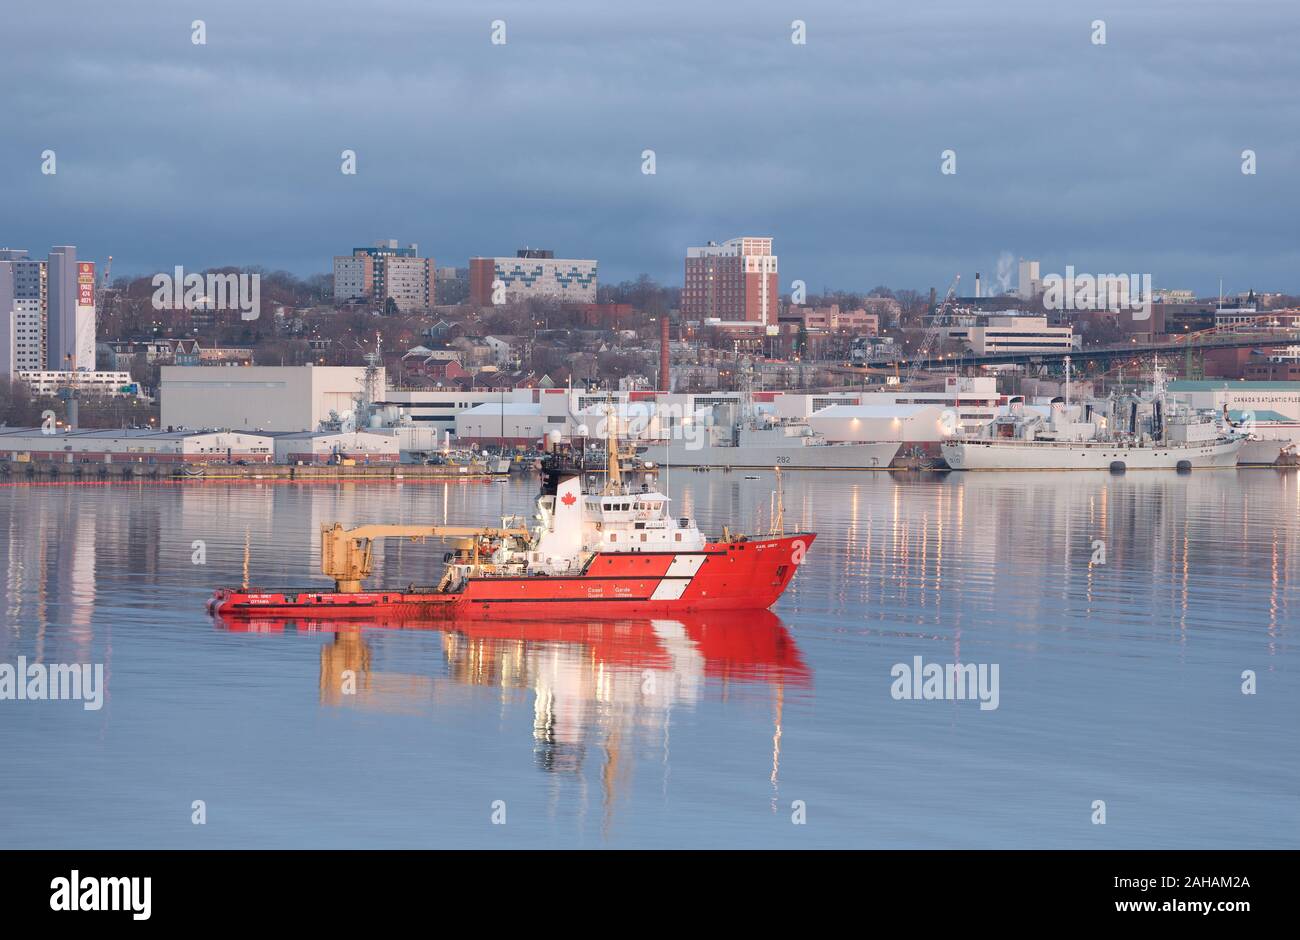 Halifax, Canadá - 09 de mayo de 2014: CCGS Earl Grey en el puerto de Halifax. El Earl Grey es un Canadian Coast Guard luz boya de barco rompehielos y licitación. Foto de stock